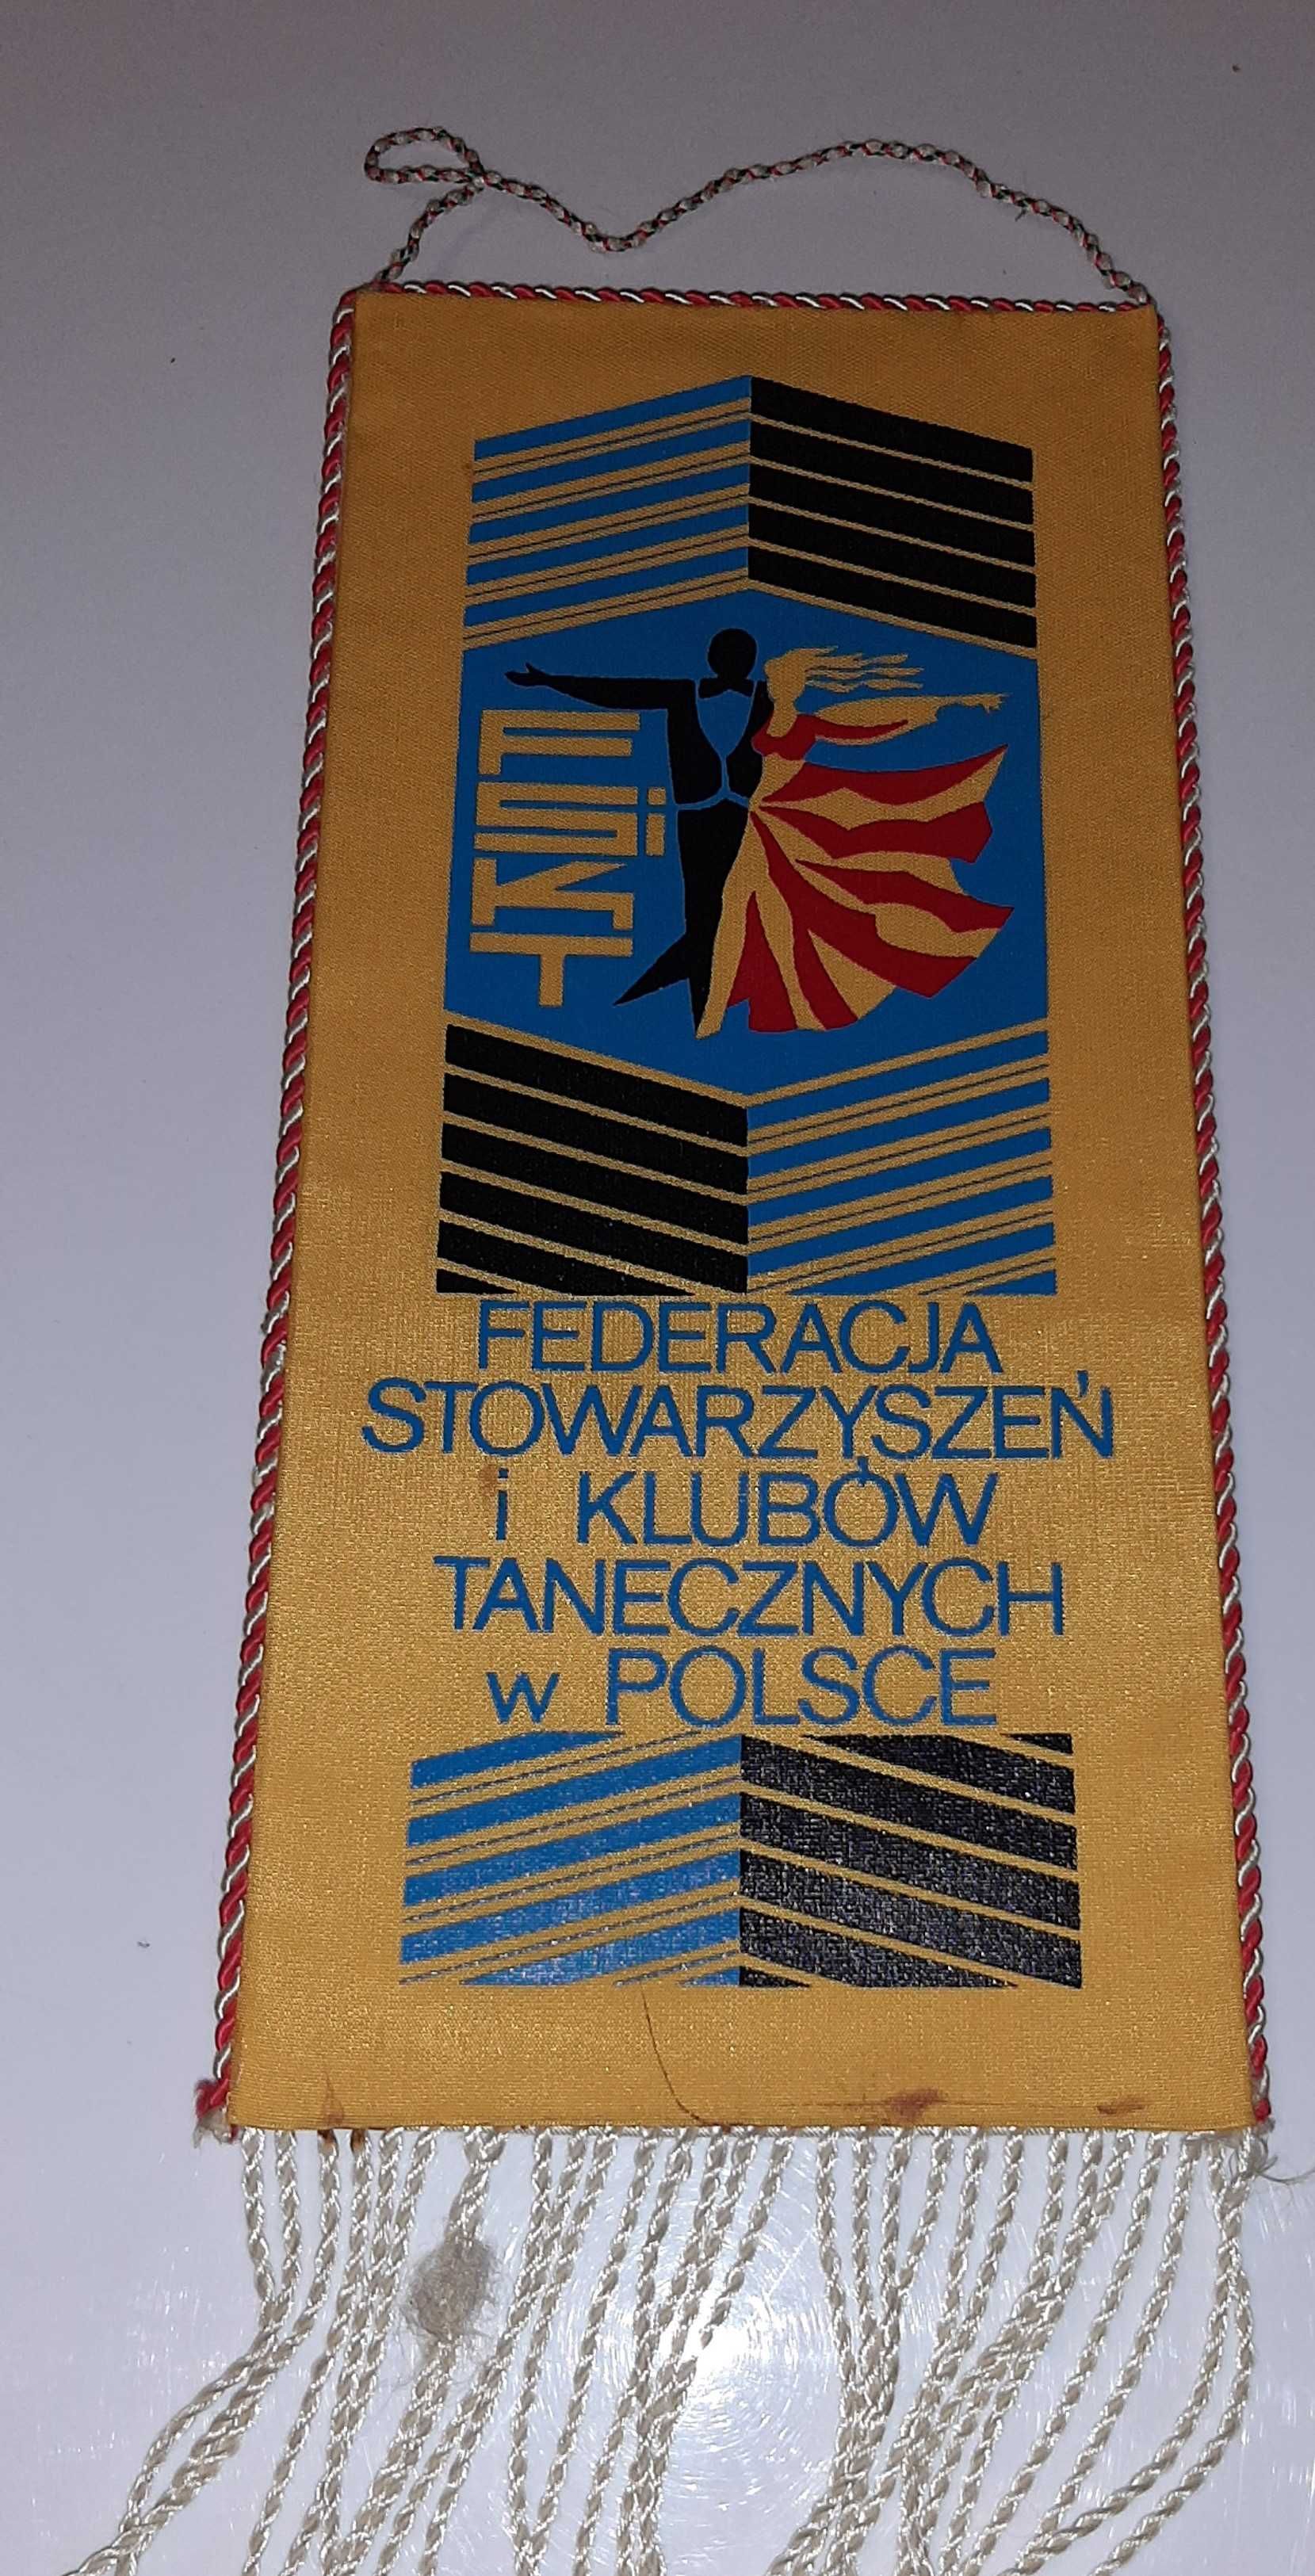 Proporczyk II Mistrzostwa Polski Zespołów Tanecznych Radom 1979